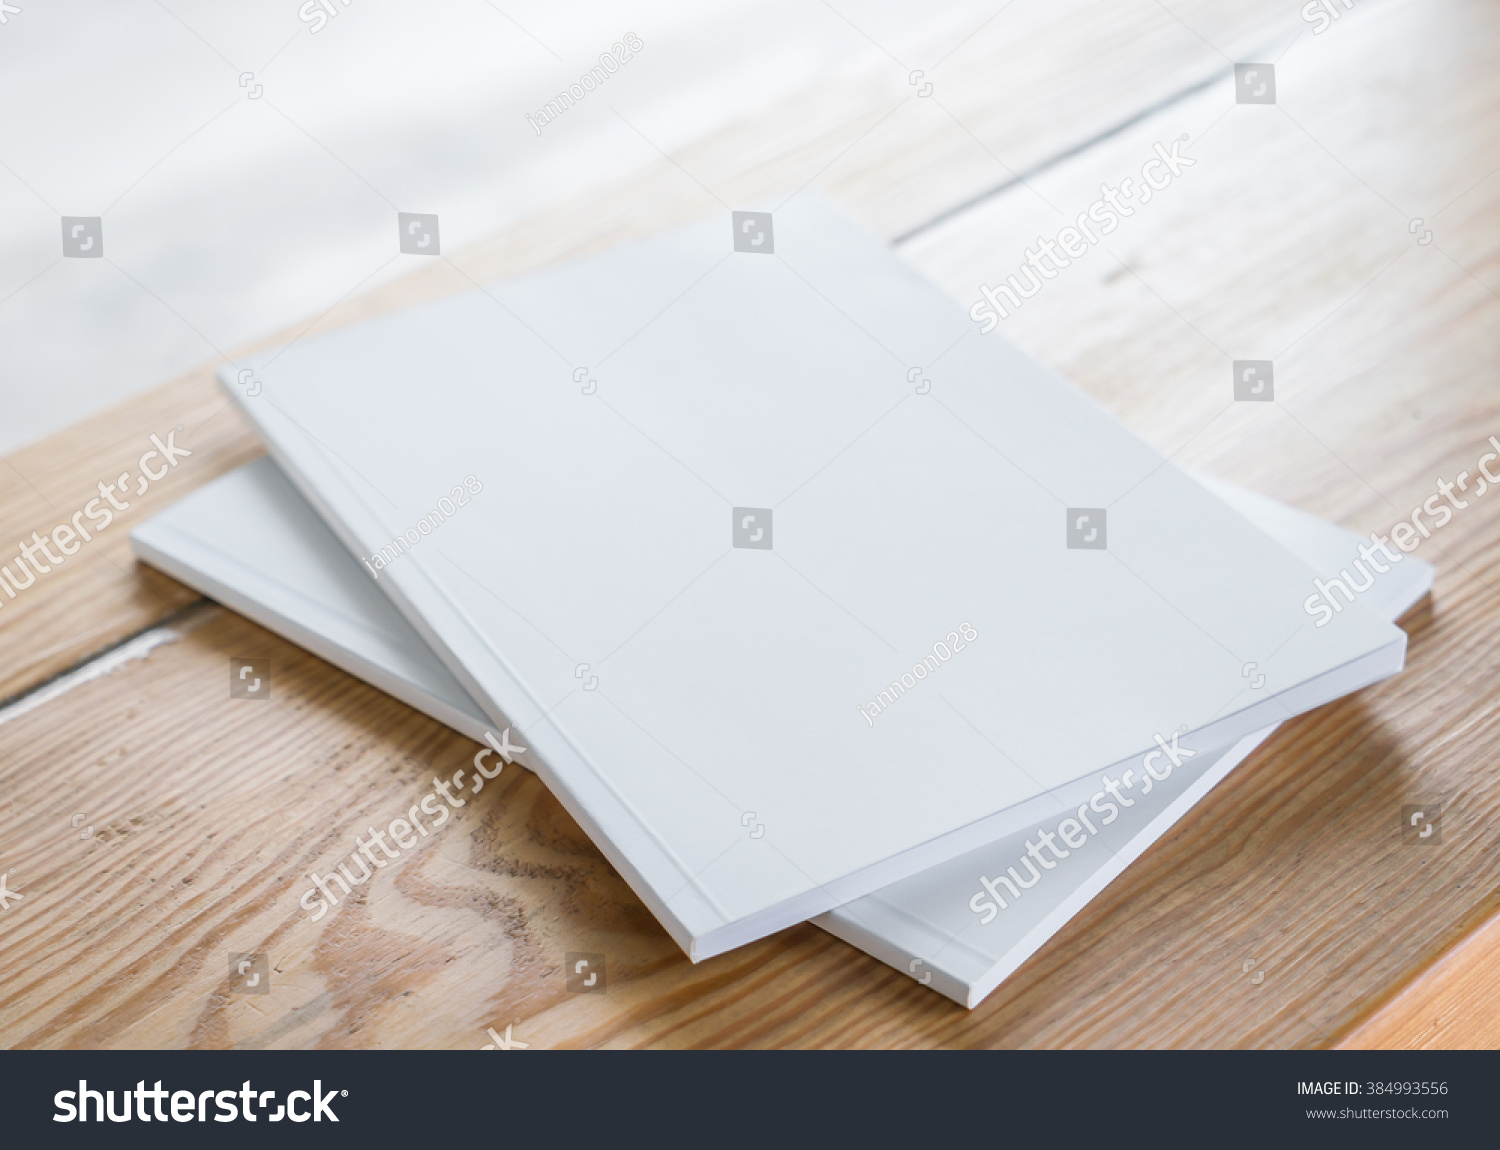 Blank catalog, magazines,book mock up on wood background #384993556